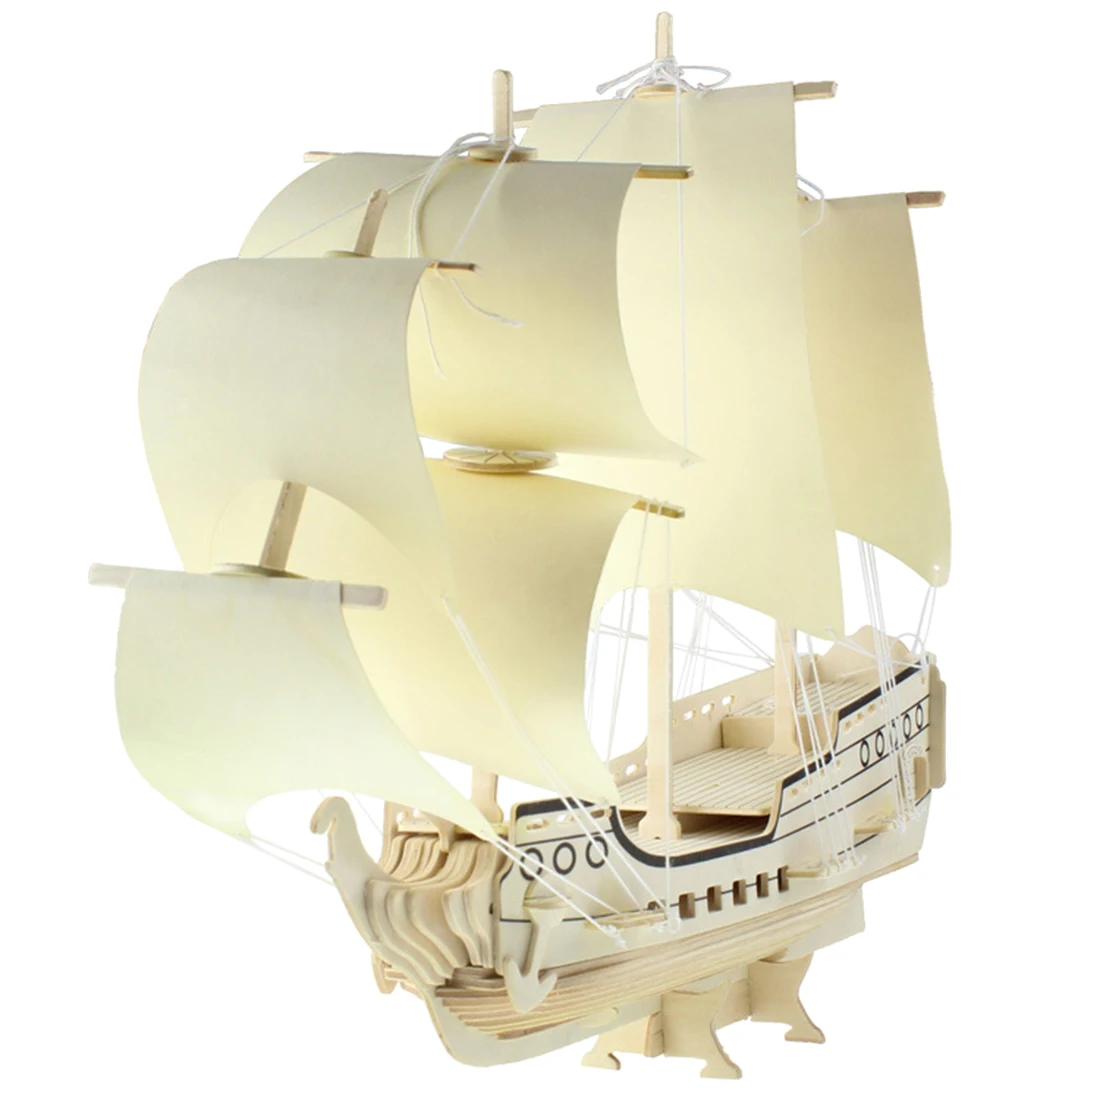 3D деревянные пазлы DIY Сборная модель корабля игрушка деревянный парусник игрушки модели строительные наборы для детей взрослых-Гётеборг